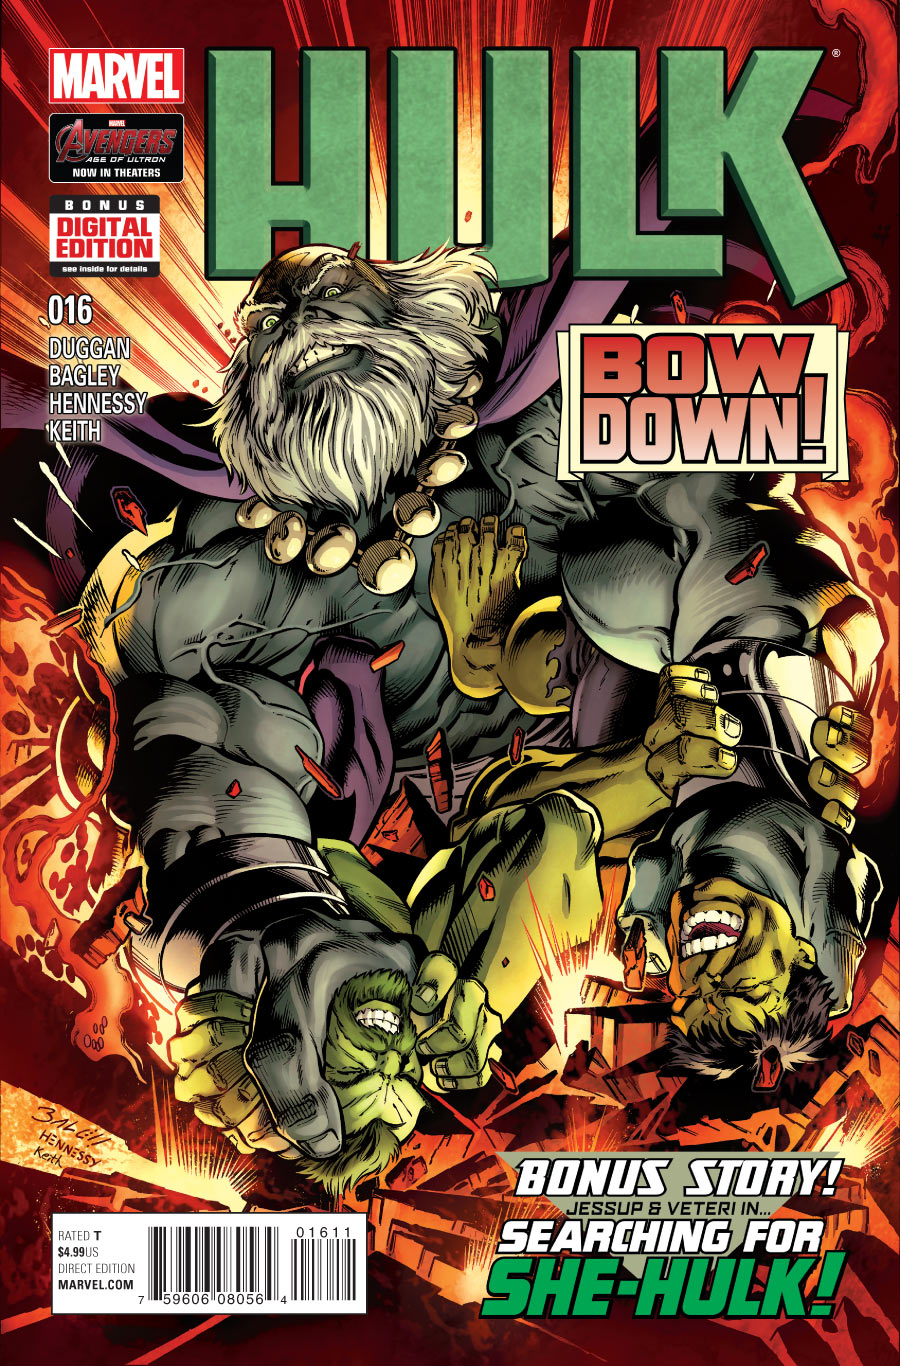 Hulk Vol. 3 #16